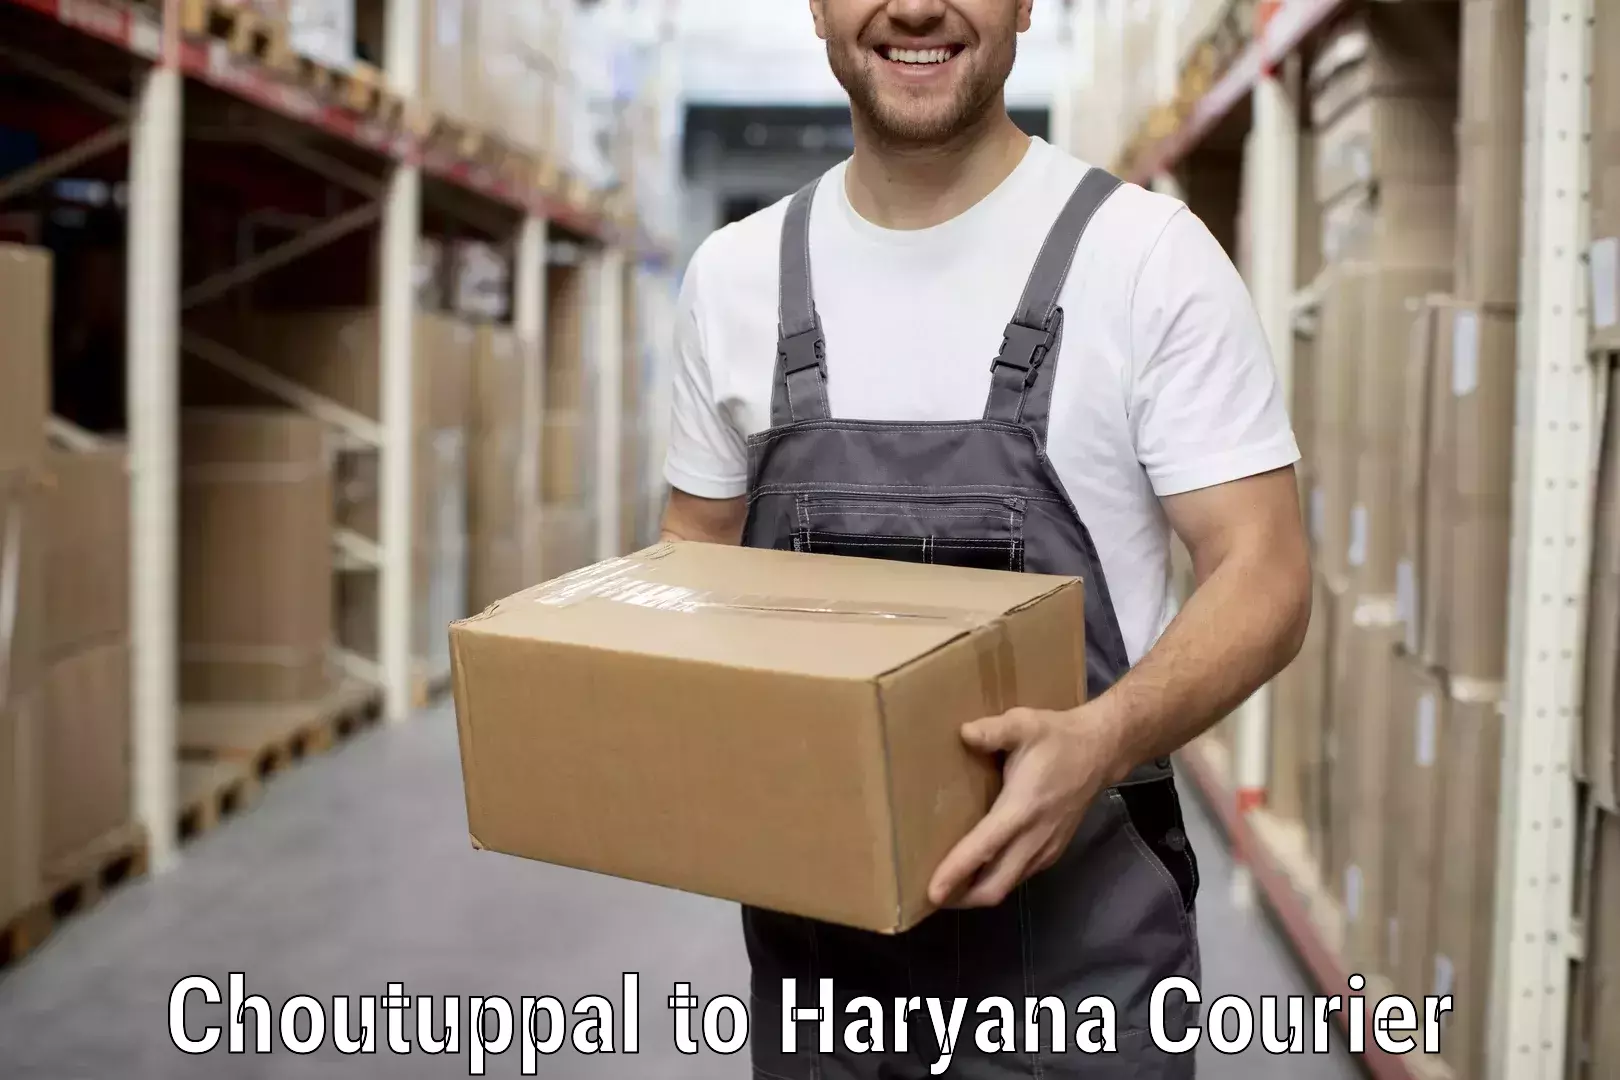 Professional moving company Choutuppal to Chirya